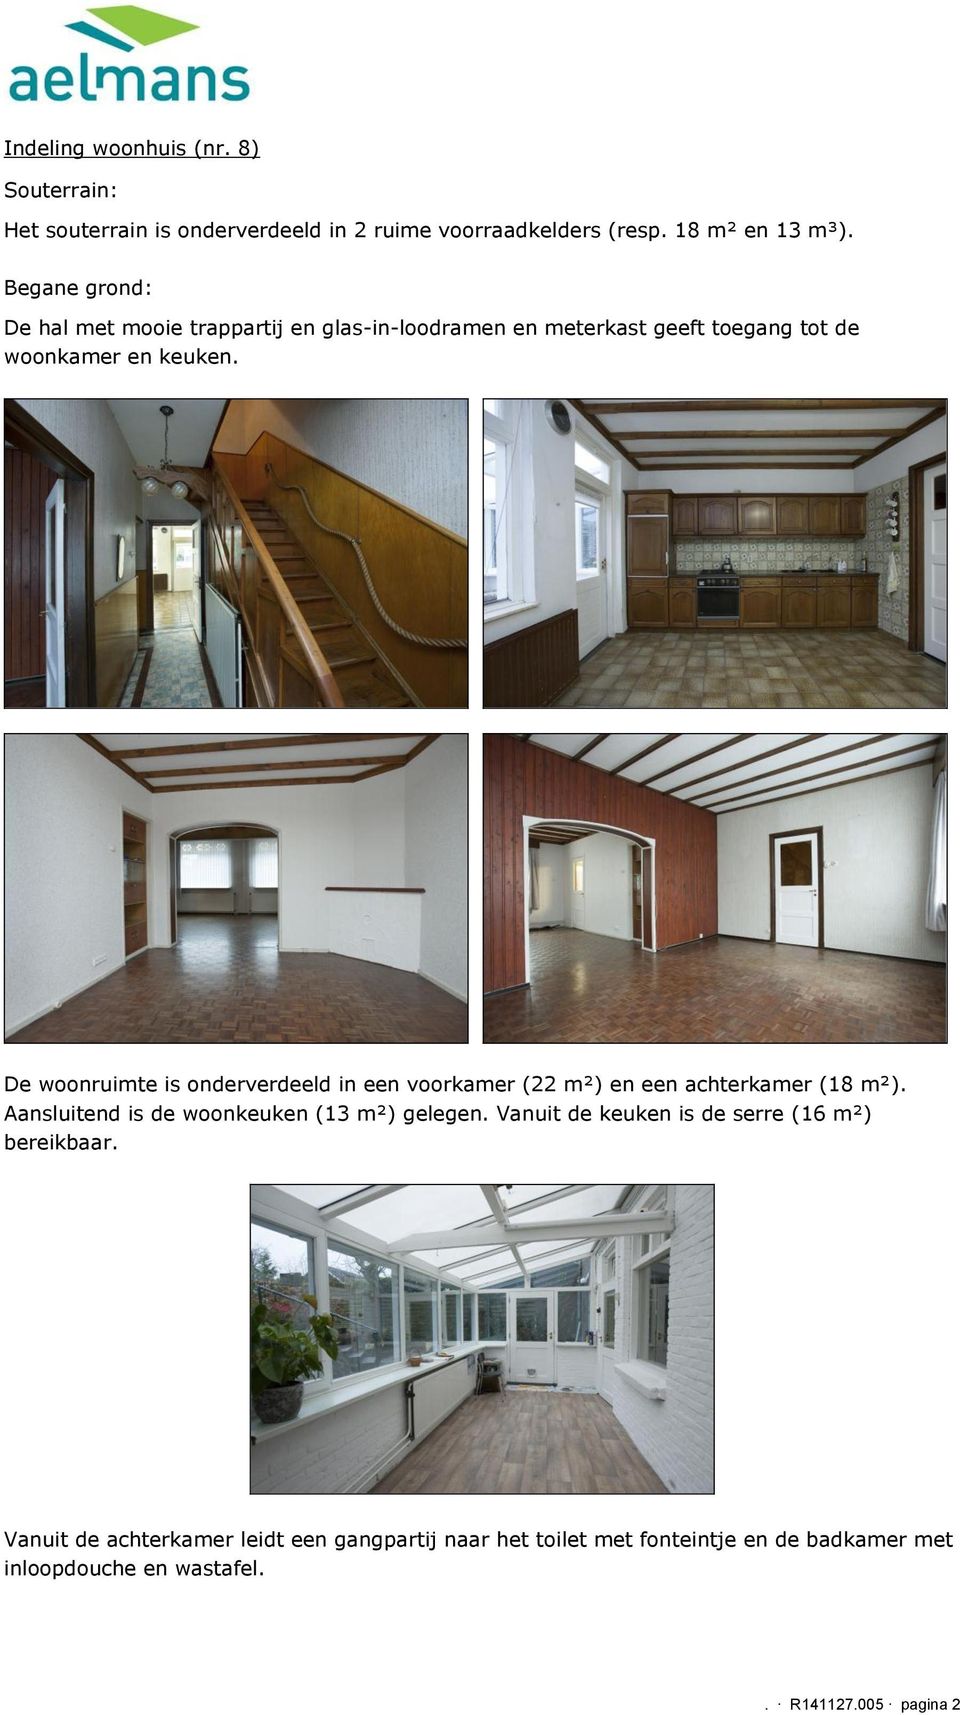 De woonruimte is onderverdeeld in een voorkamer (22 m²) en een achterkamer (18 m²). Aansluitend is de woonkeuken (13 m²) gelegen.